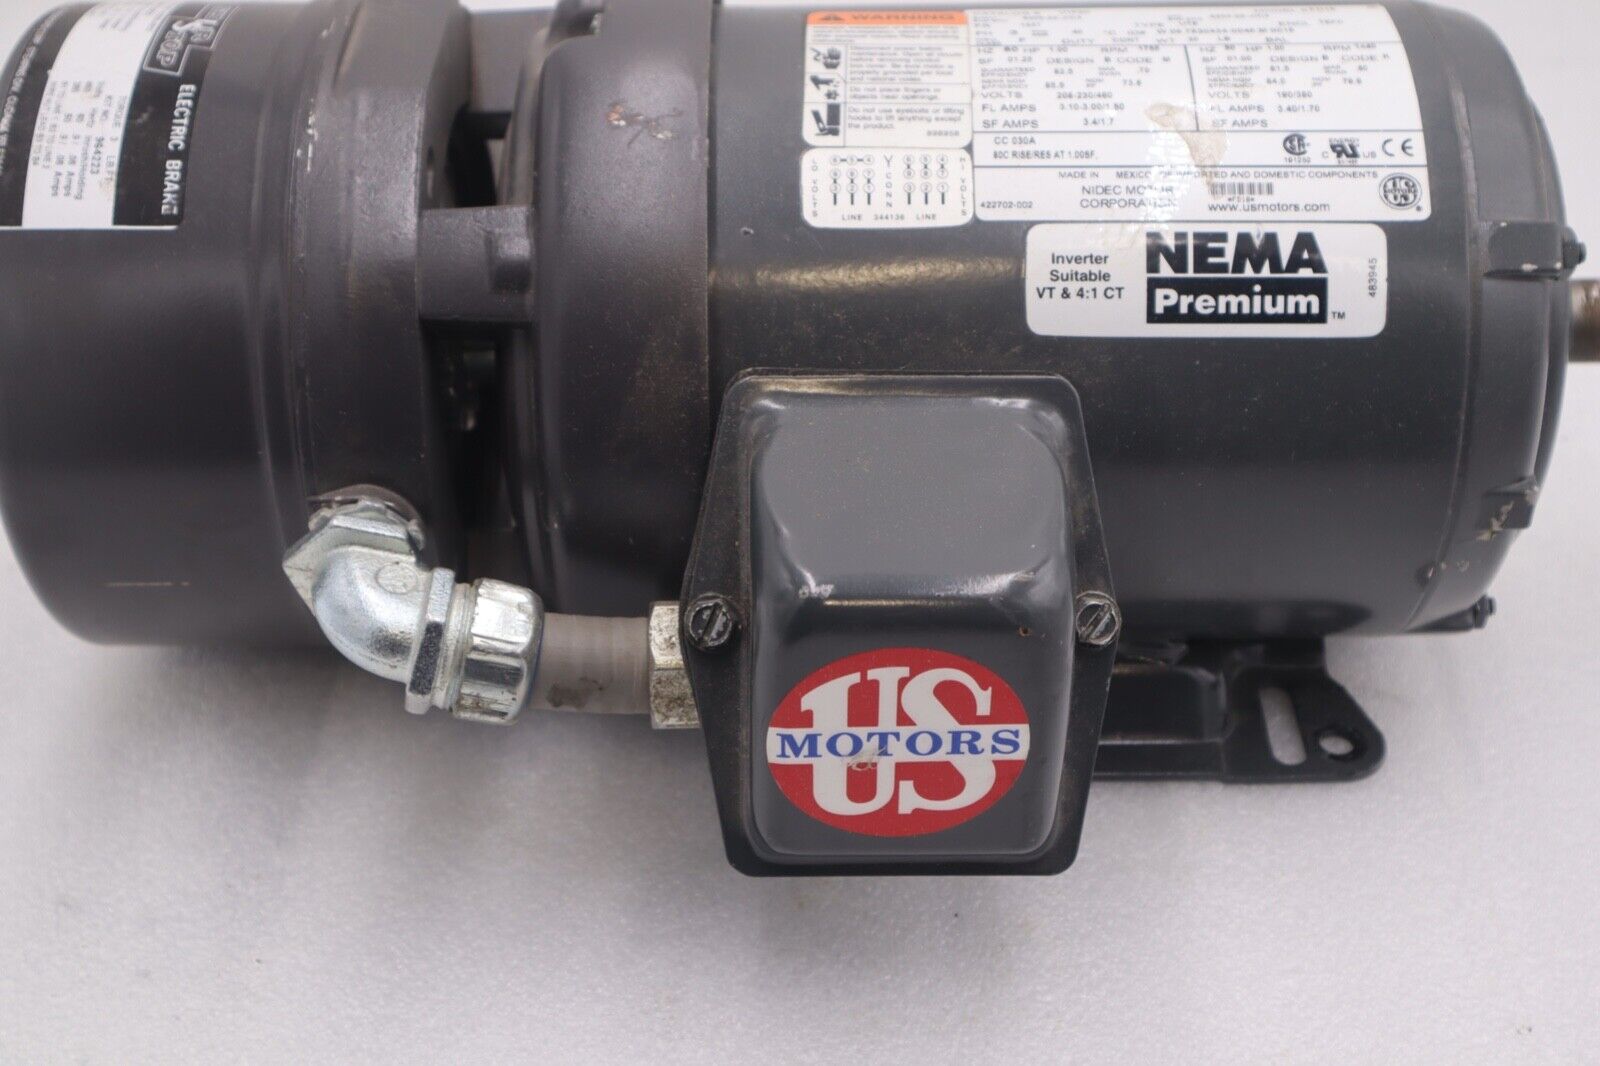 US Motors Shur Stop 3 lb-ft Electric Brake 105631106003 Motor #2545